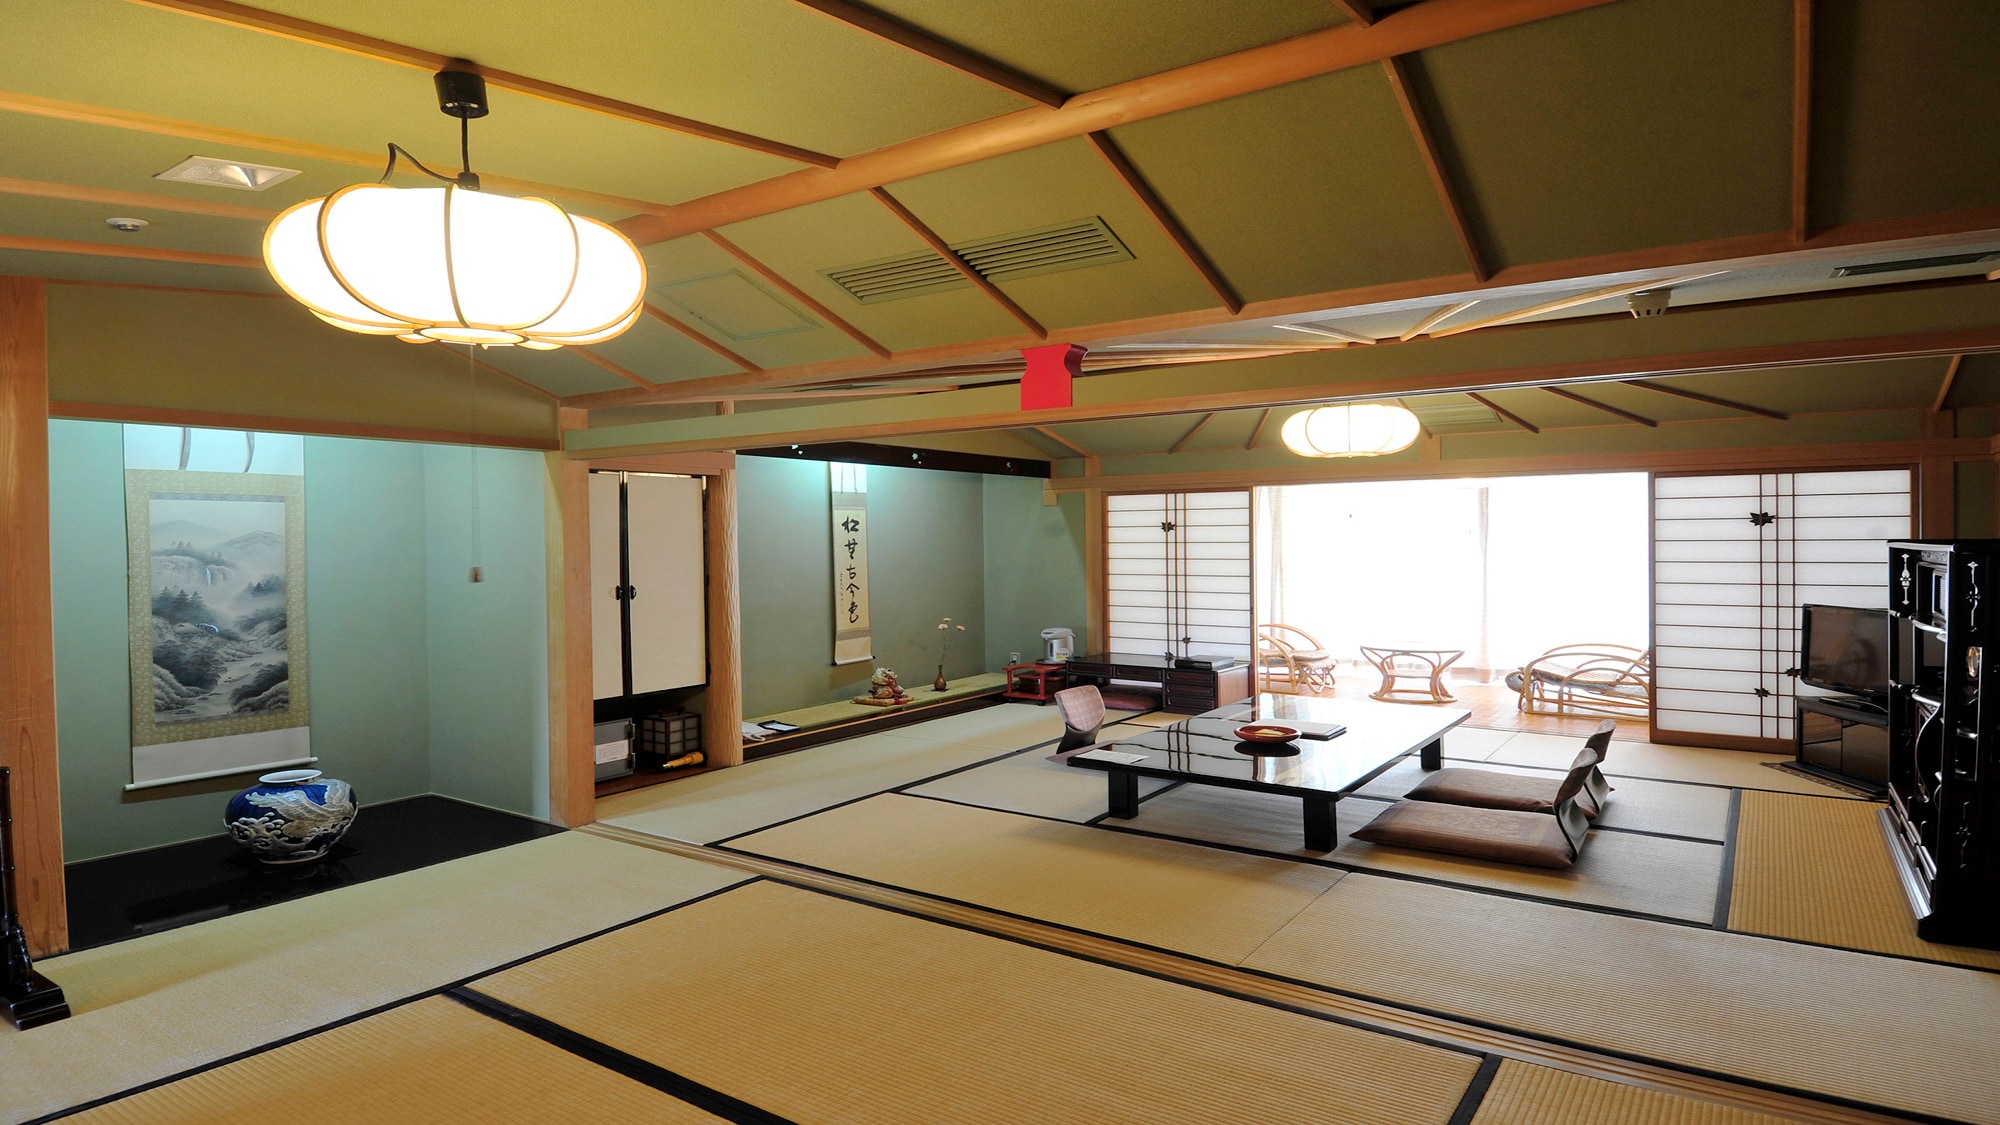 ◆ Japanese-style room 2 rooms (10 tatami mats + 6 tatami mats)